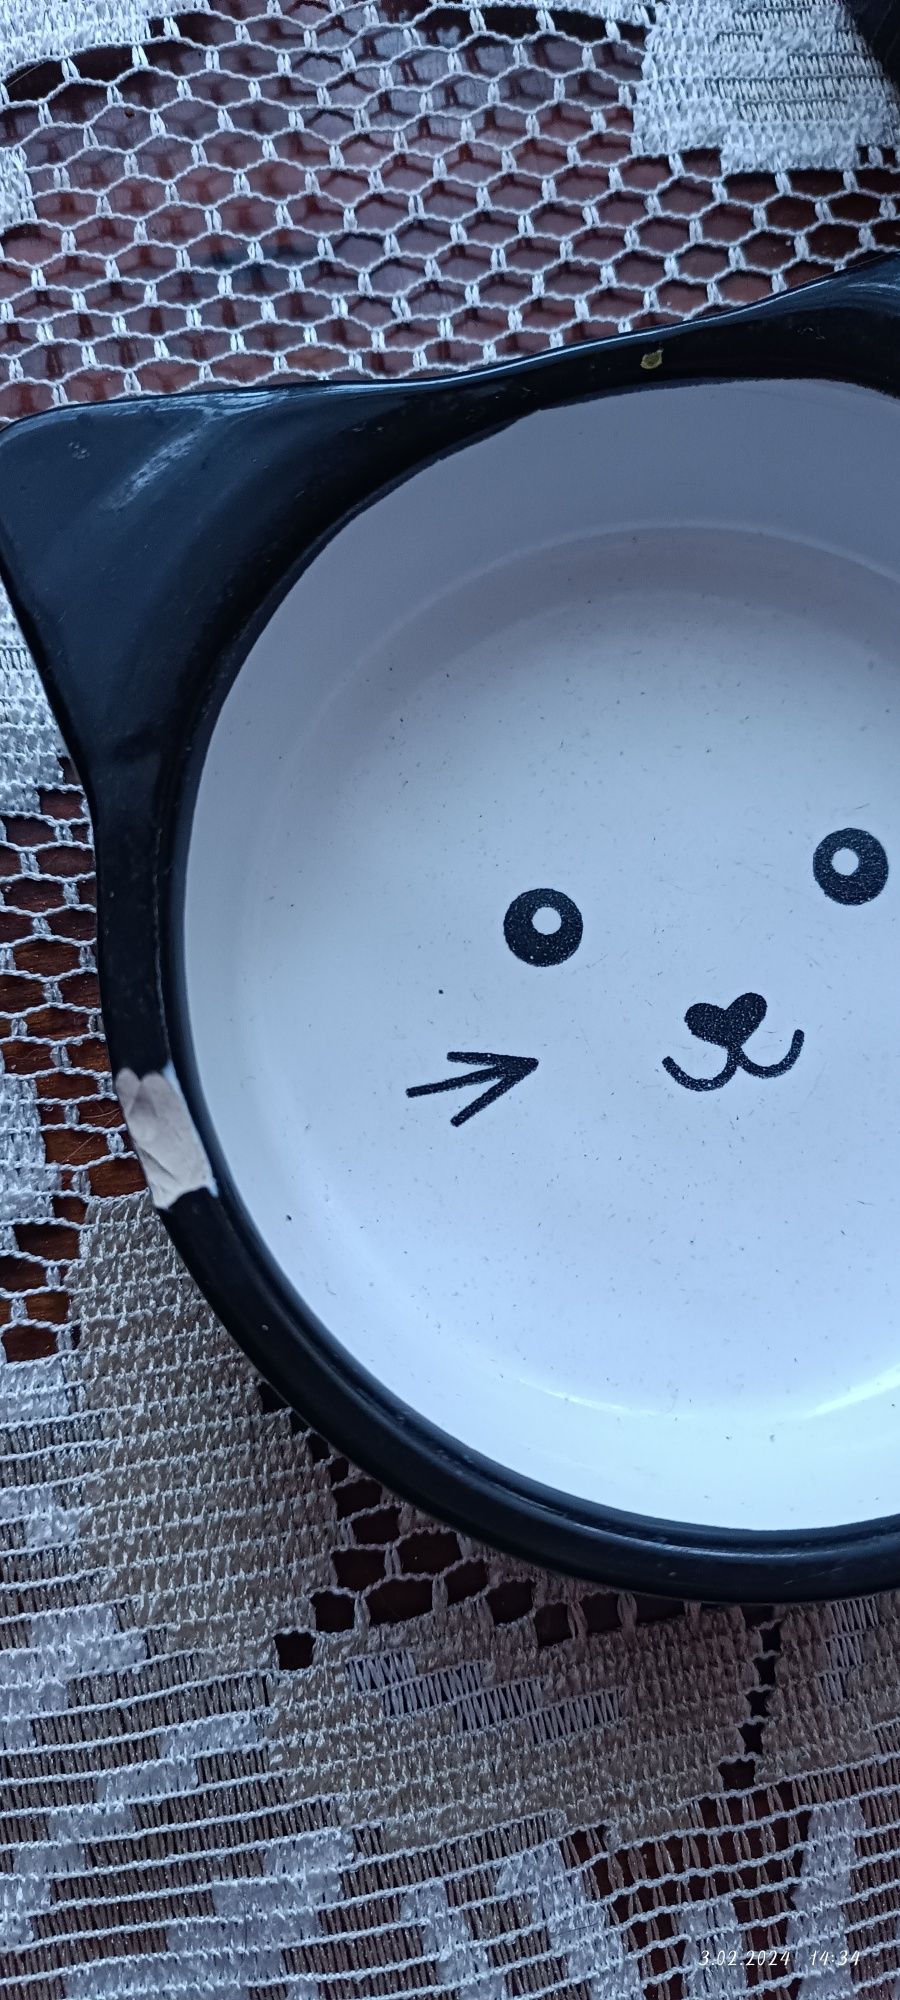 Miski ceramiczne dla kota